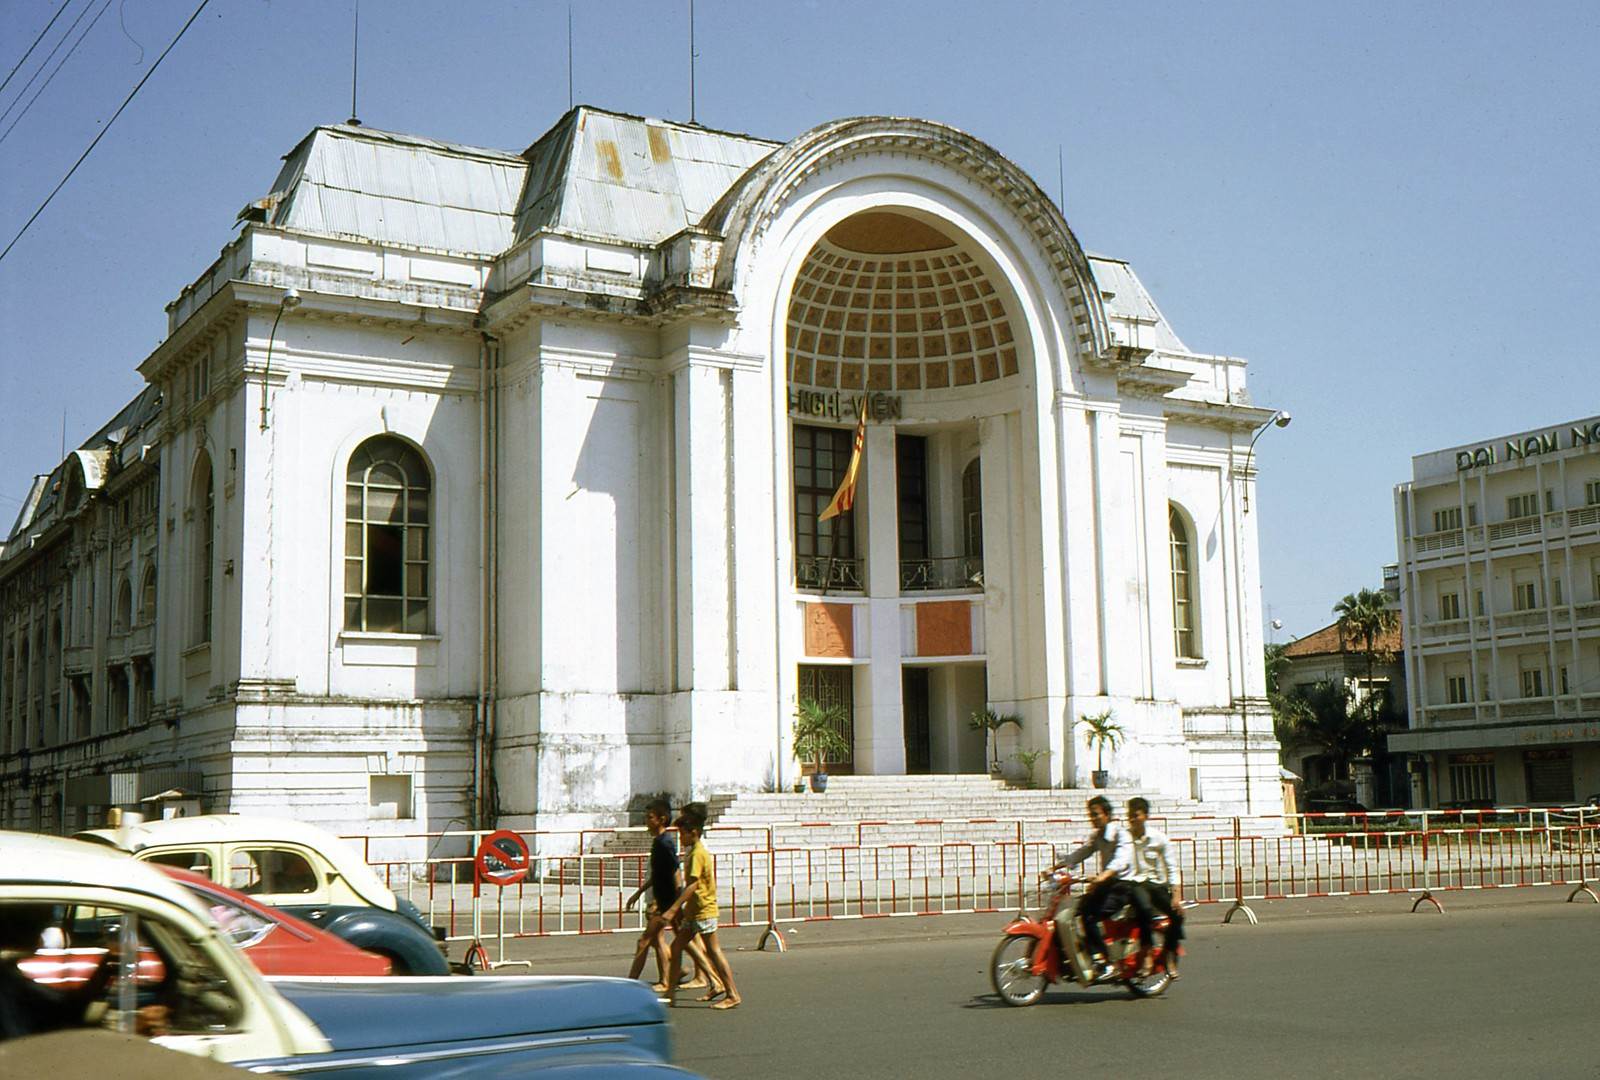 Hạ Nghị Viện Việt Nam Cộng Hòa được chụp vào năm 1969. Ảnh Frederick S. Moore